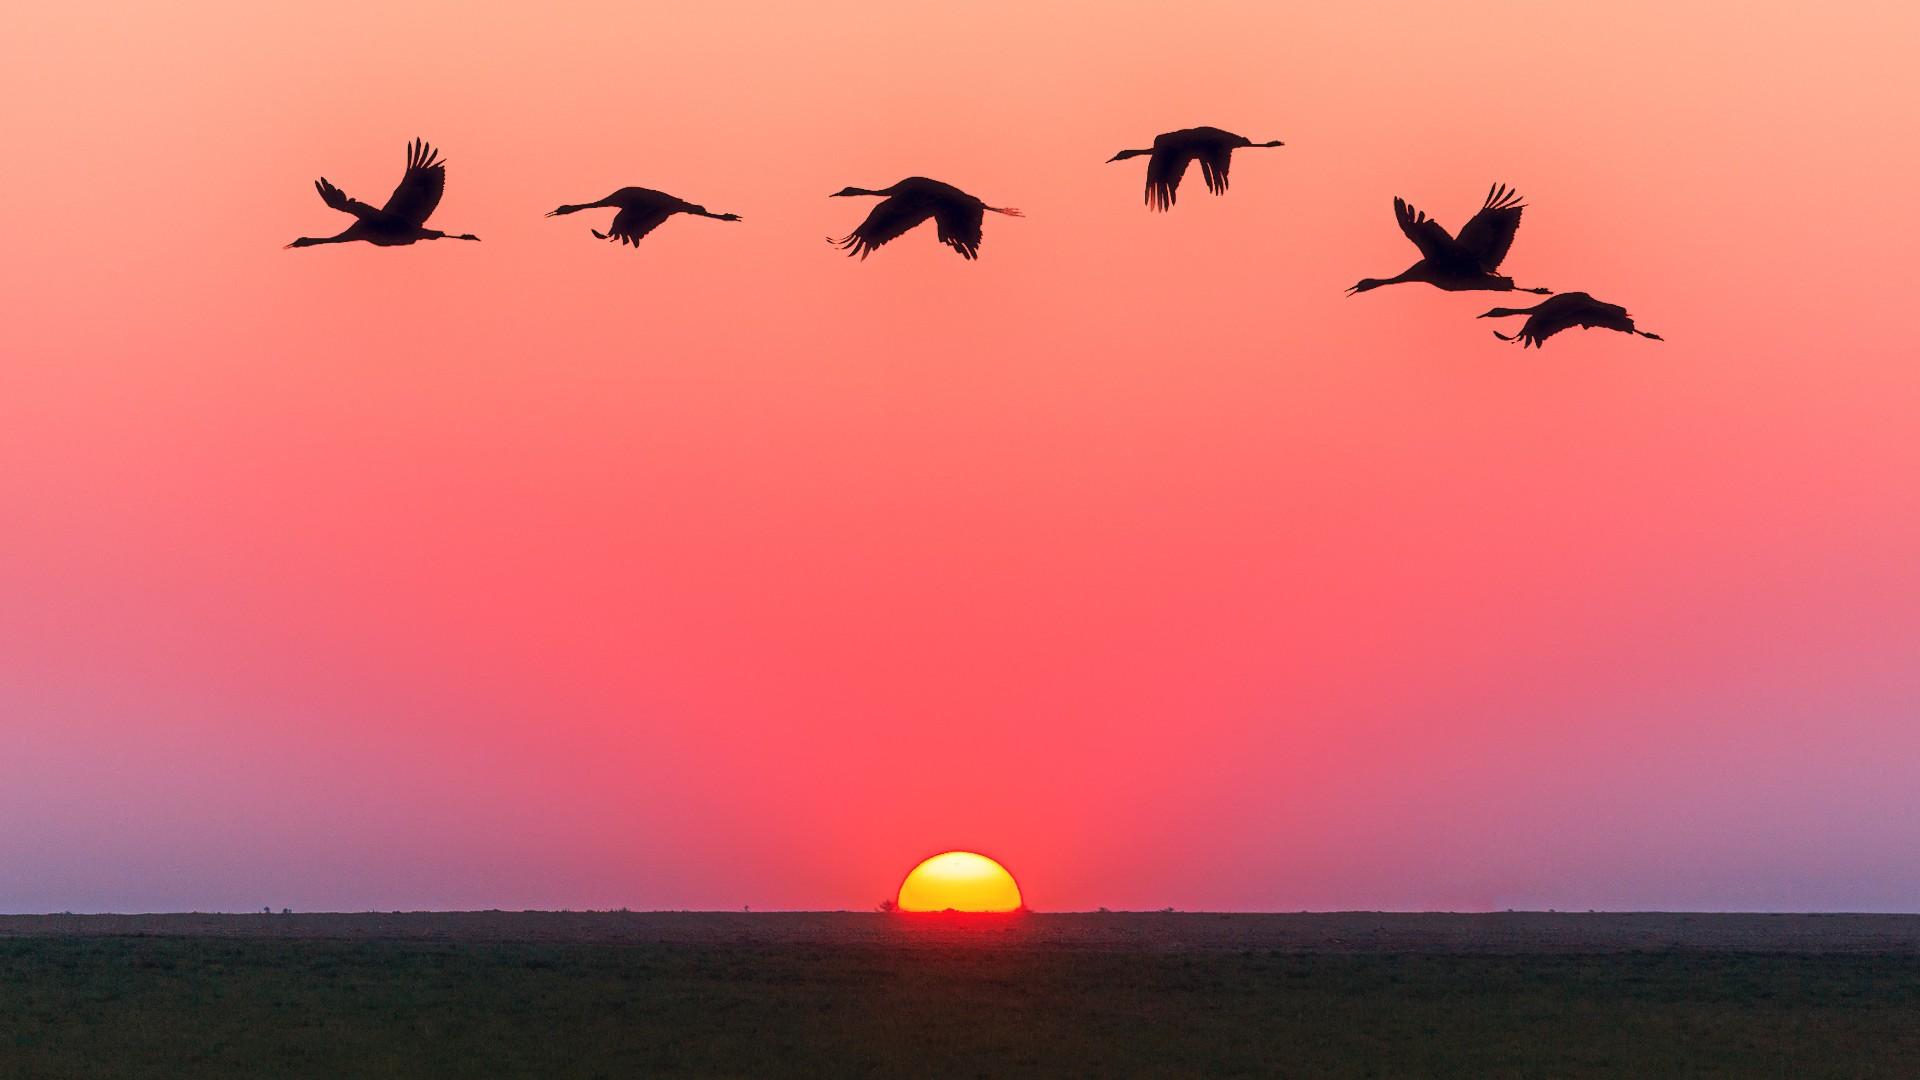 Sunset Ocean Horizon Red Sky And Birds In Flight Hd